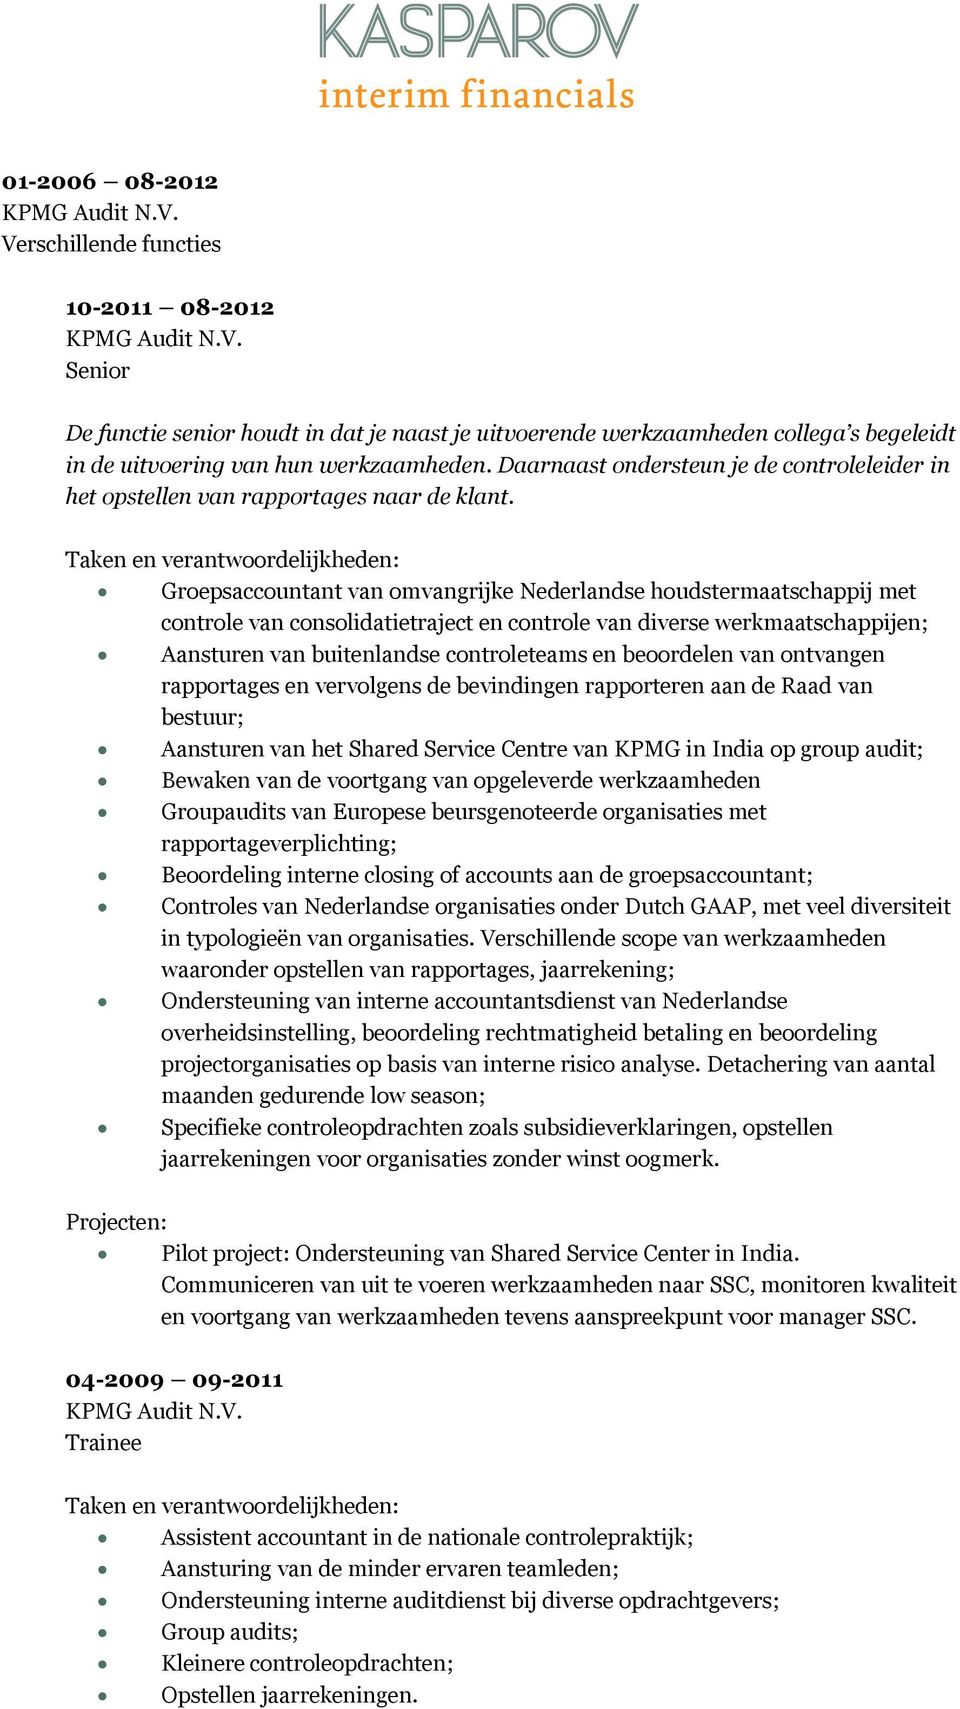 Groepsaccountant van omvangrijke Nederlandse houdstermaatschappij met controle van consolidatietraject en controle van diverse werkmaatschappijen; Aansturen van buitenlandse controleteams en